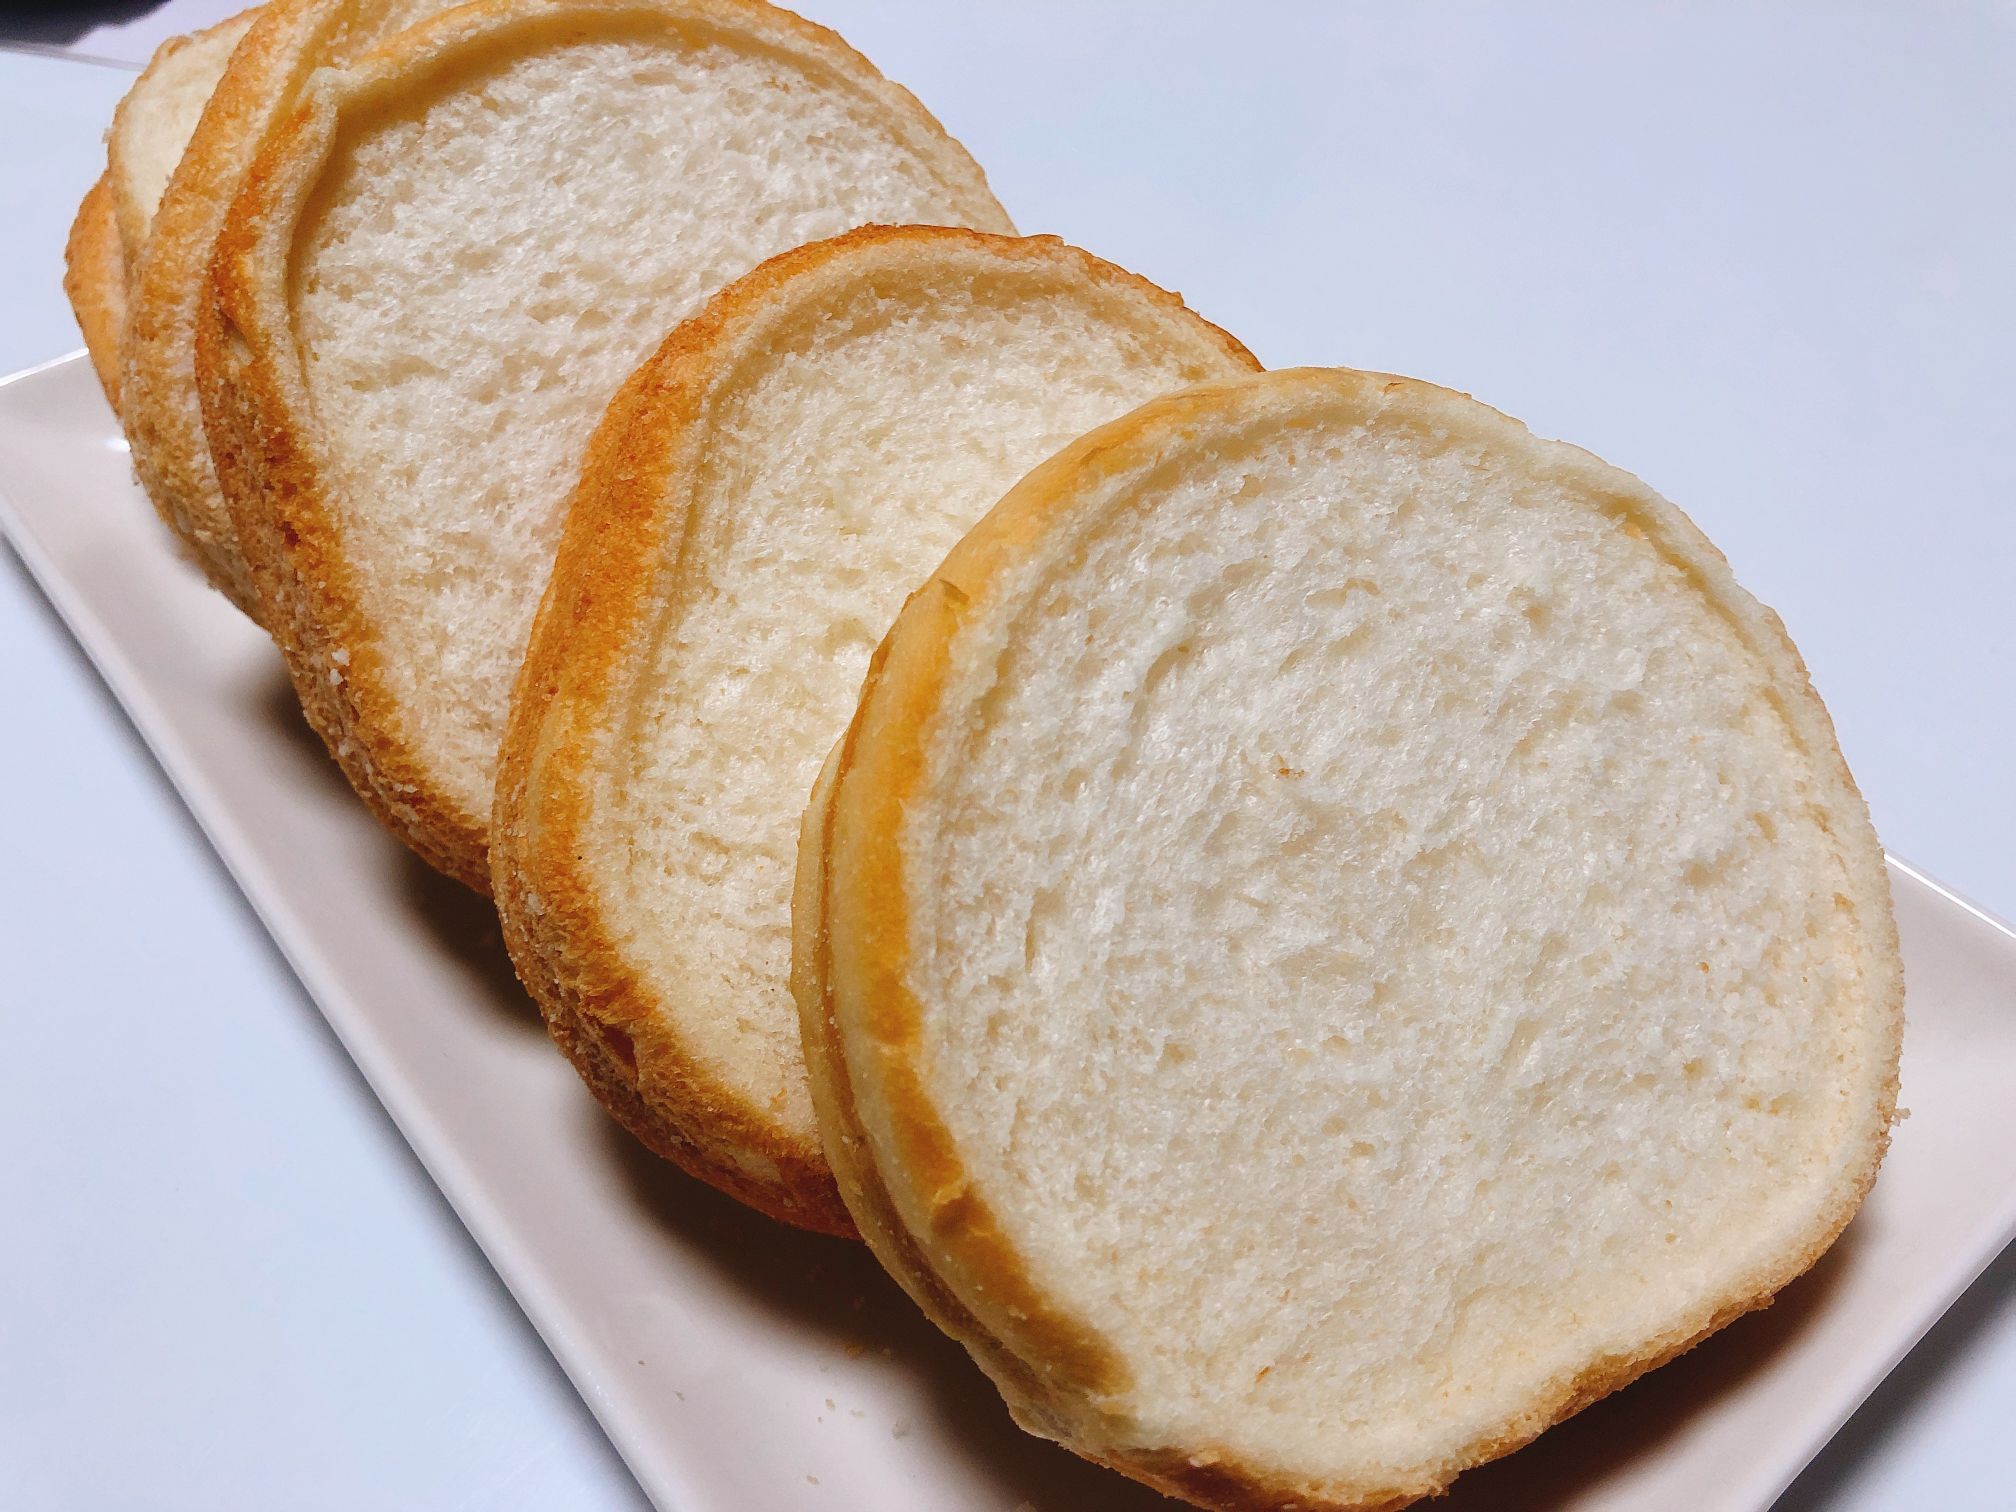 永楽堂 工場直売所のパン